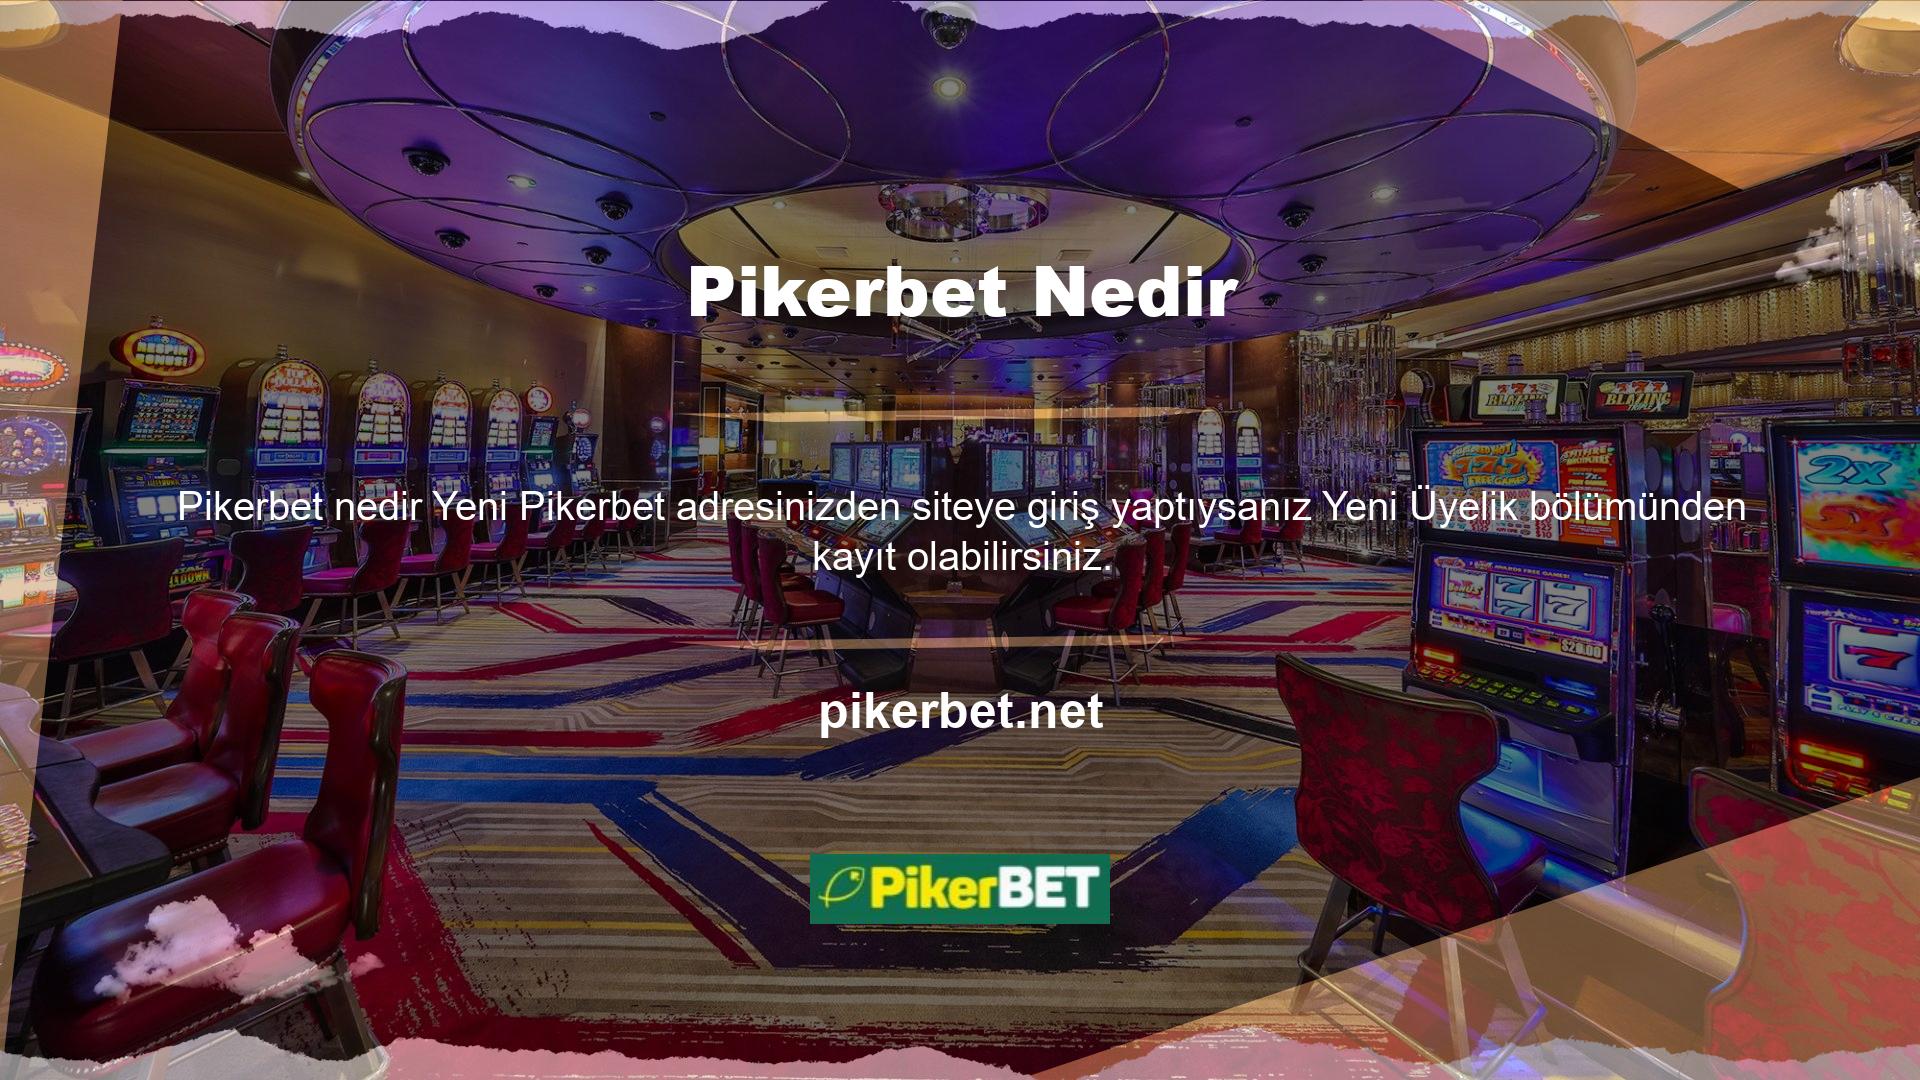 Pikerbet web sitesinde sunulan bahis hizmetleri arasında spor bahisleri, canlı bahisler, sanal bahisler, casino, poker, 3D slotlar, canlı oyunlar ve canlı bingo bulunmaktadır